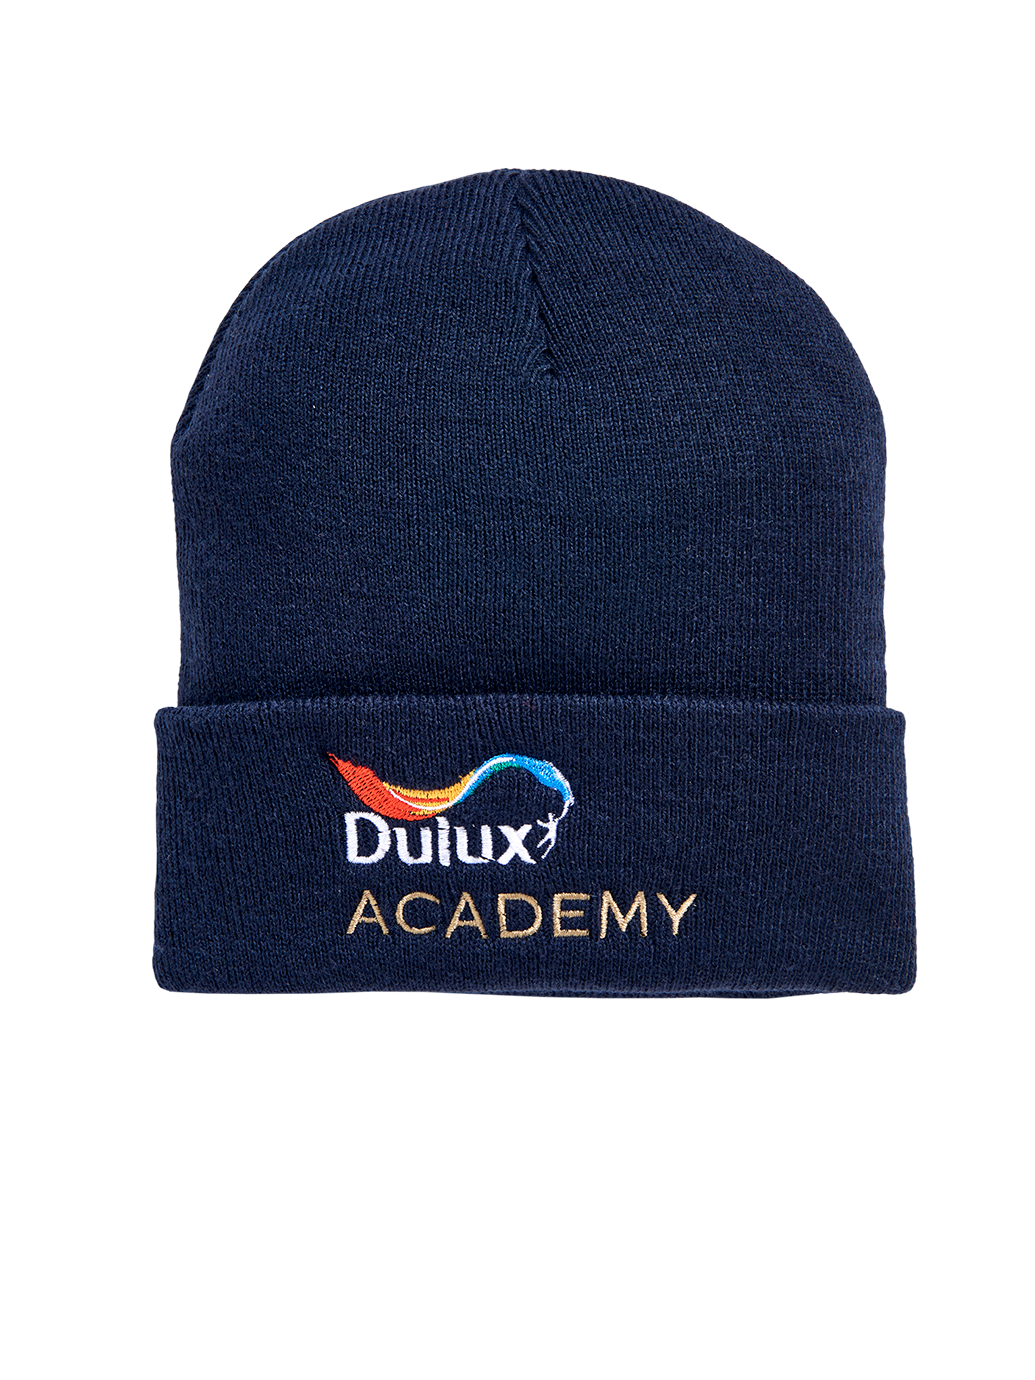 Dulux Academy Beanie Hat